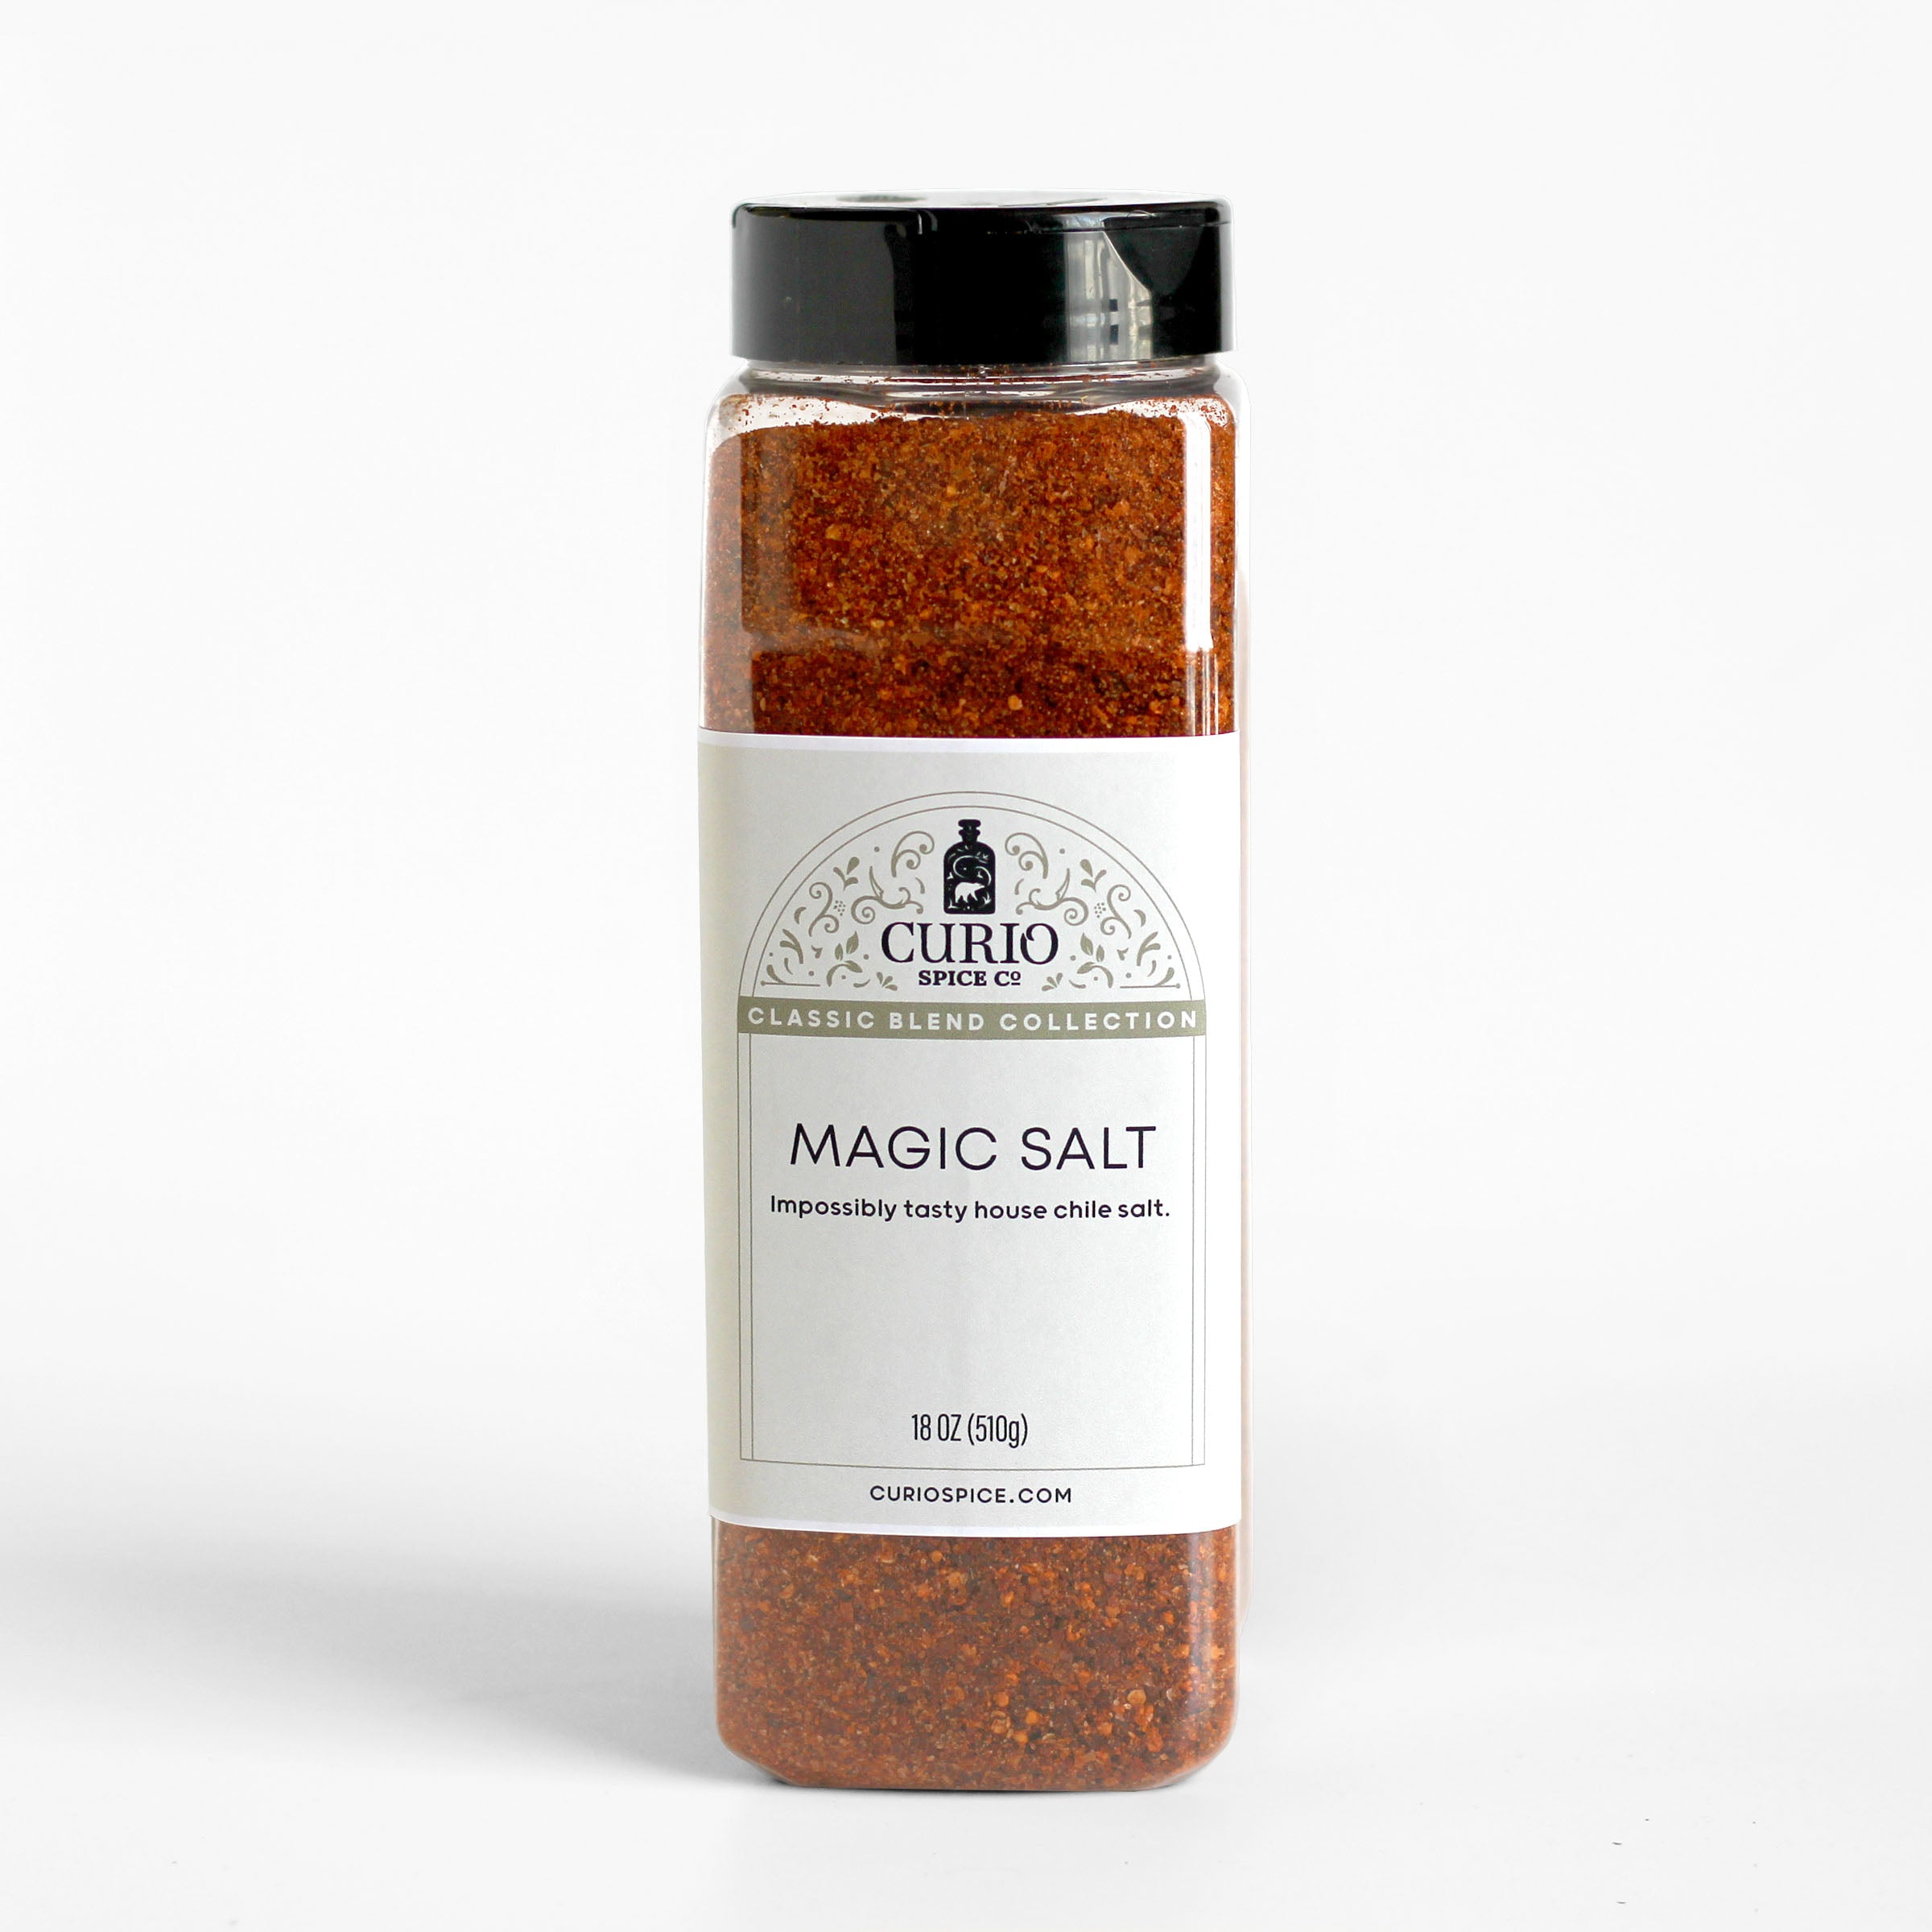 Salt + Pepper Blend – Saltery